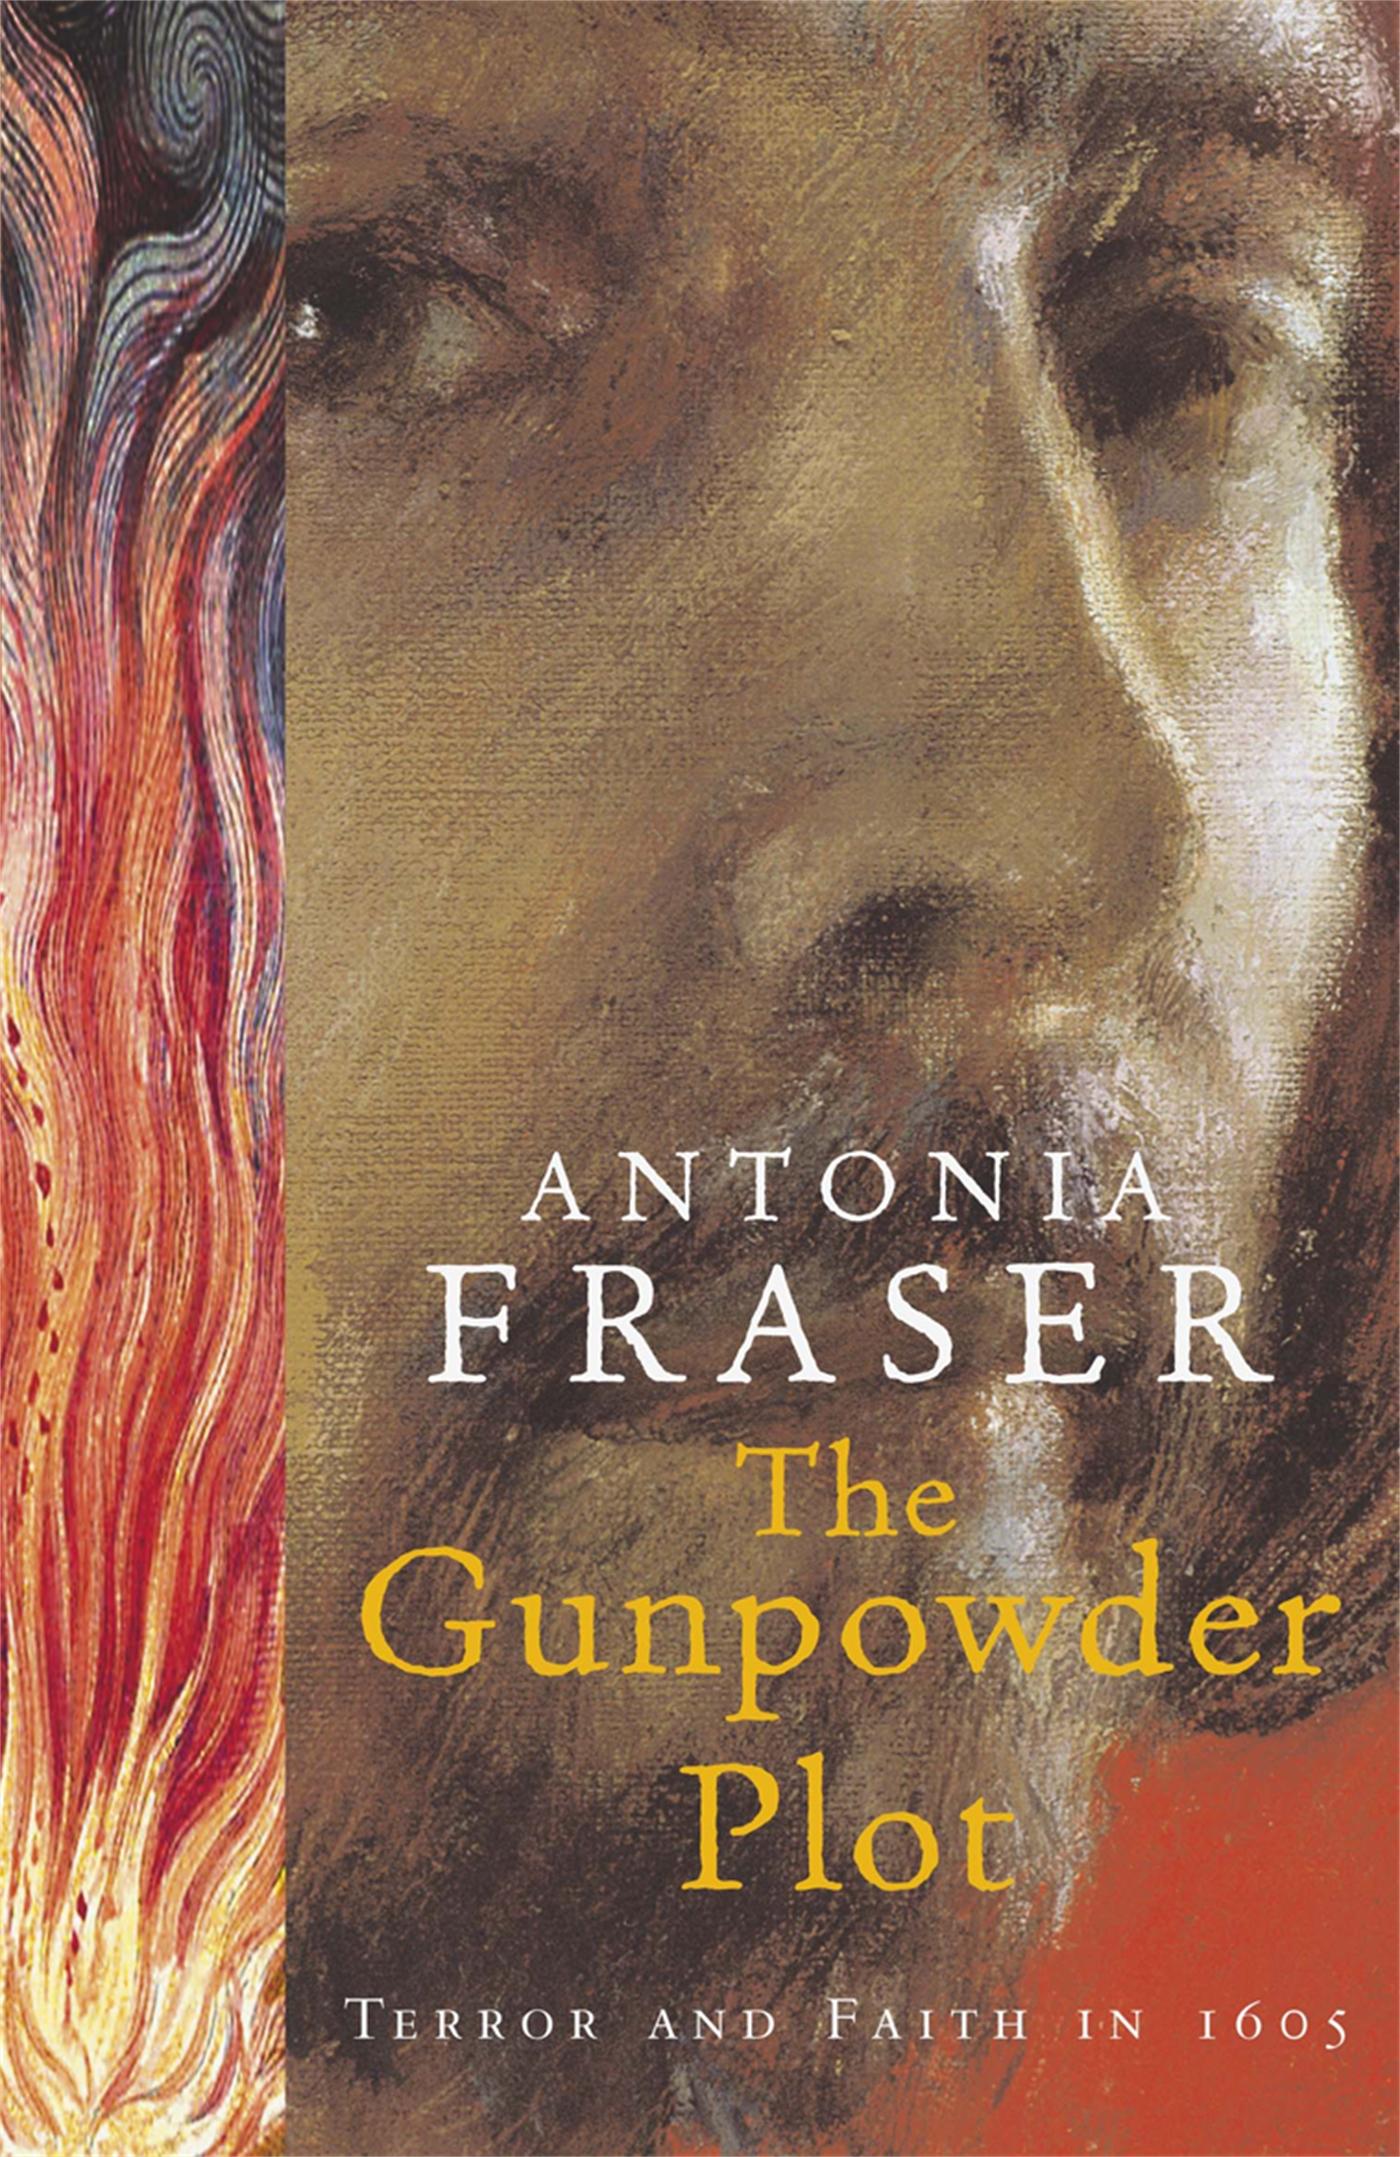 The Gunpowder Plot / Terror And Faith In 1605 / Lady Antonia Fraser / Taschenbuch / Kartoniert / Broschiert / Englisch / 2007 / Orion Publishing Co / EAN 9780753814017 - Fraser, Lady Antonia